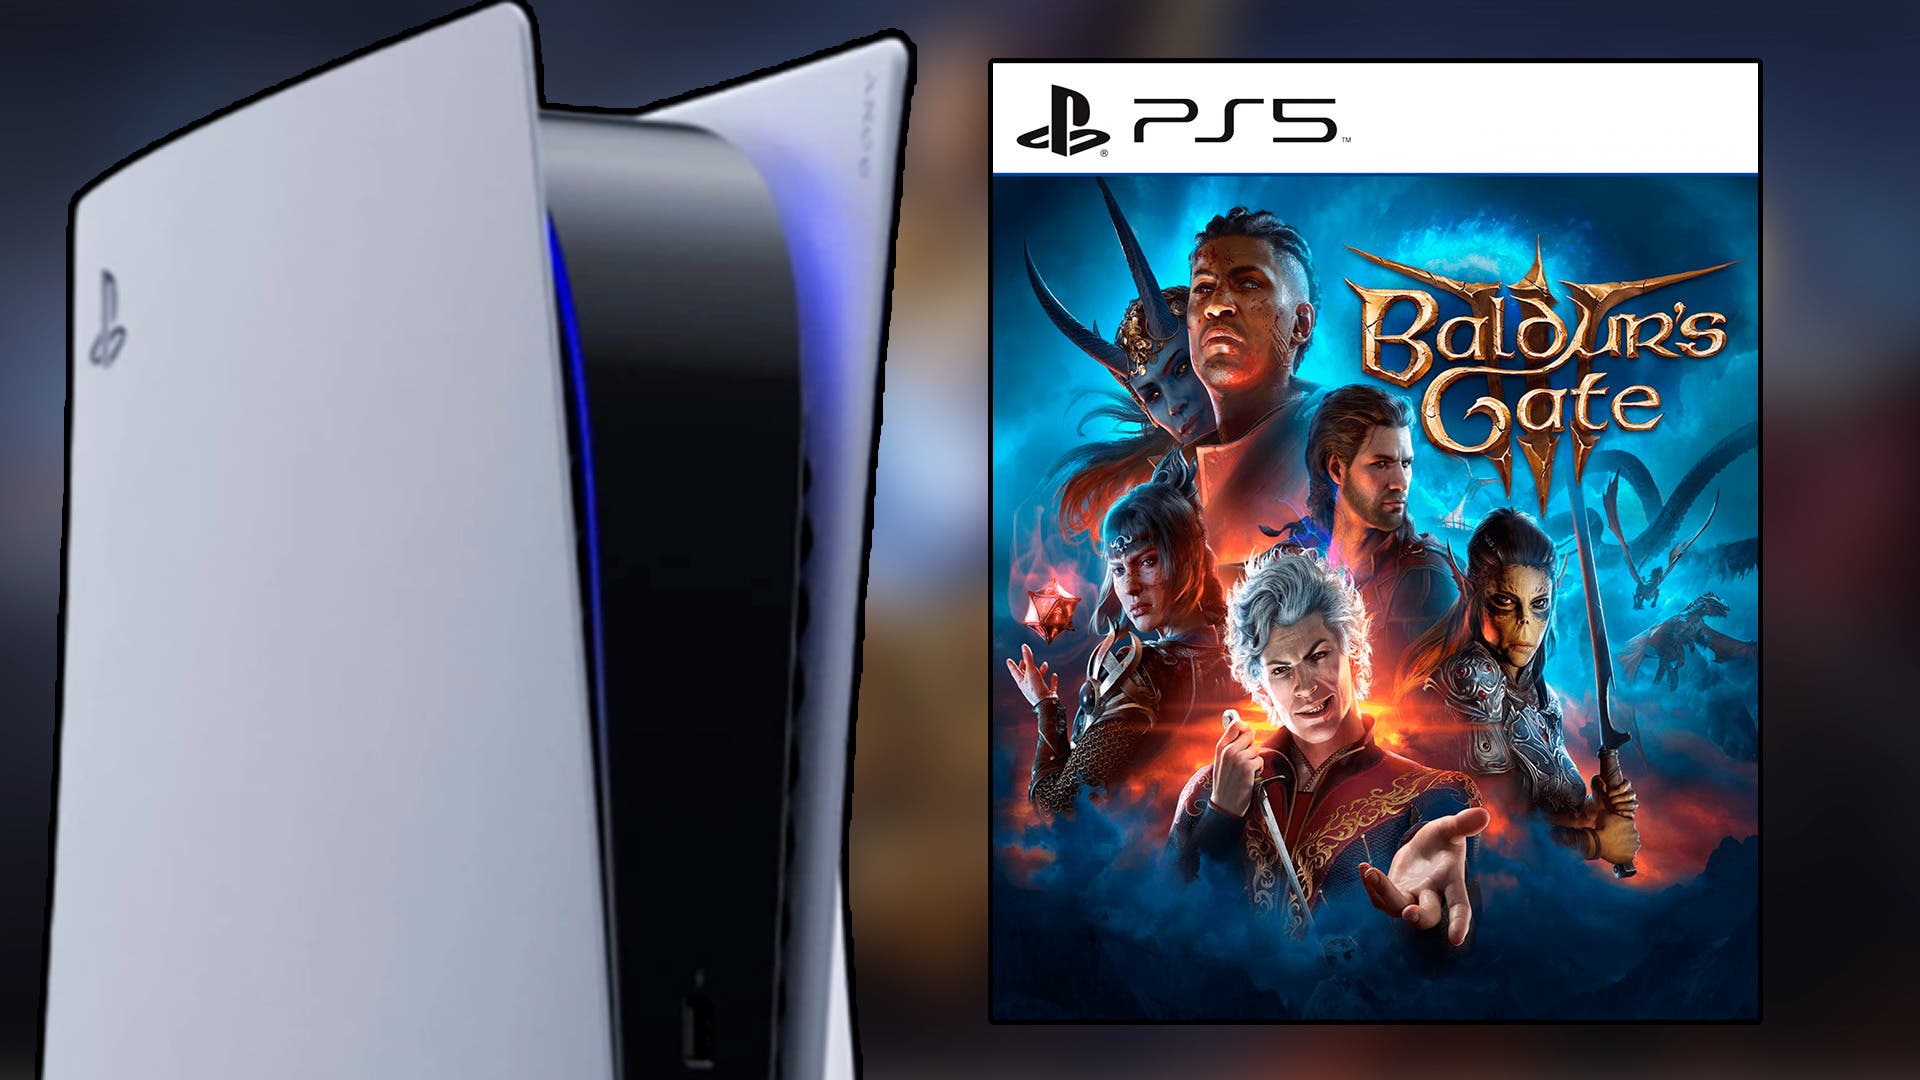 Esperas una versión física de Baldur's Gate 3 para PS5? Pues creo